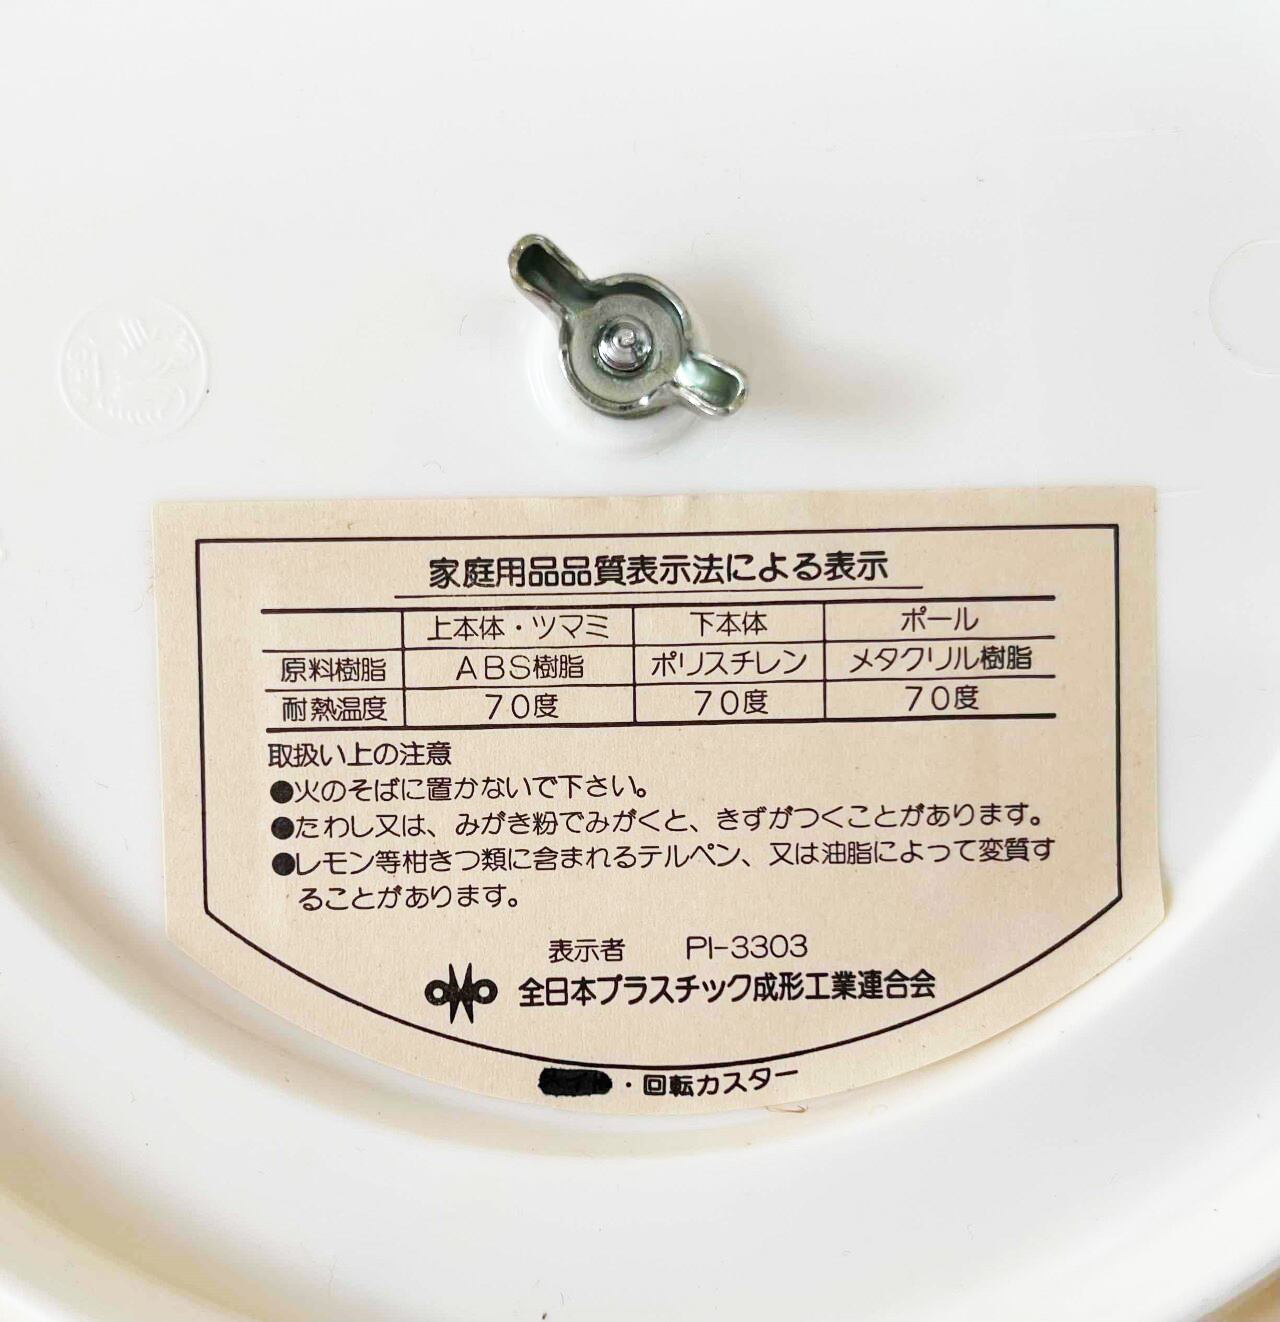 昭和レトロポップ回転トレイ付き調味料入れ - コレクション